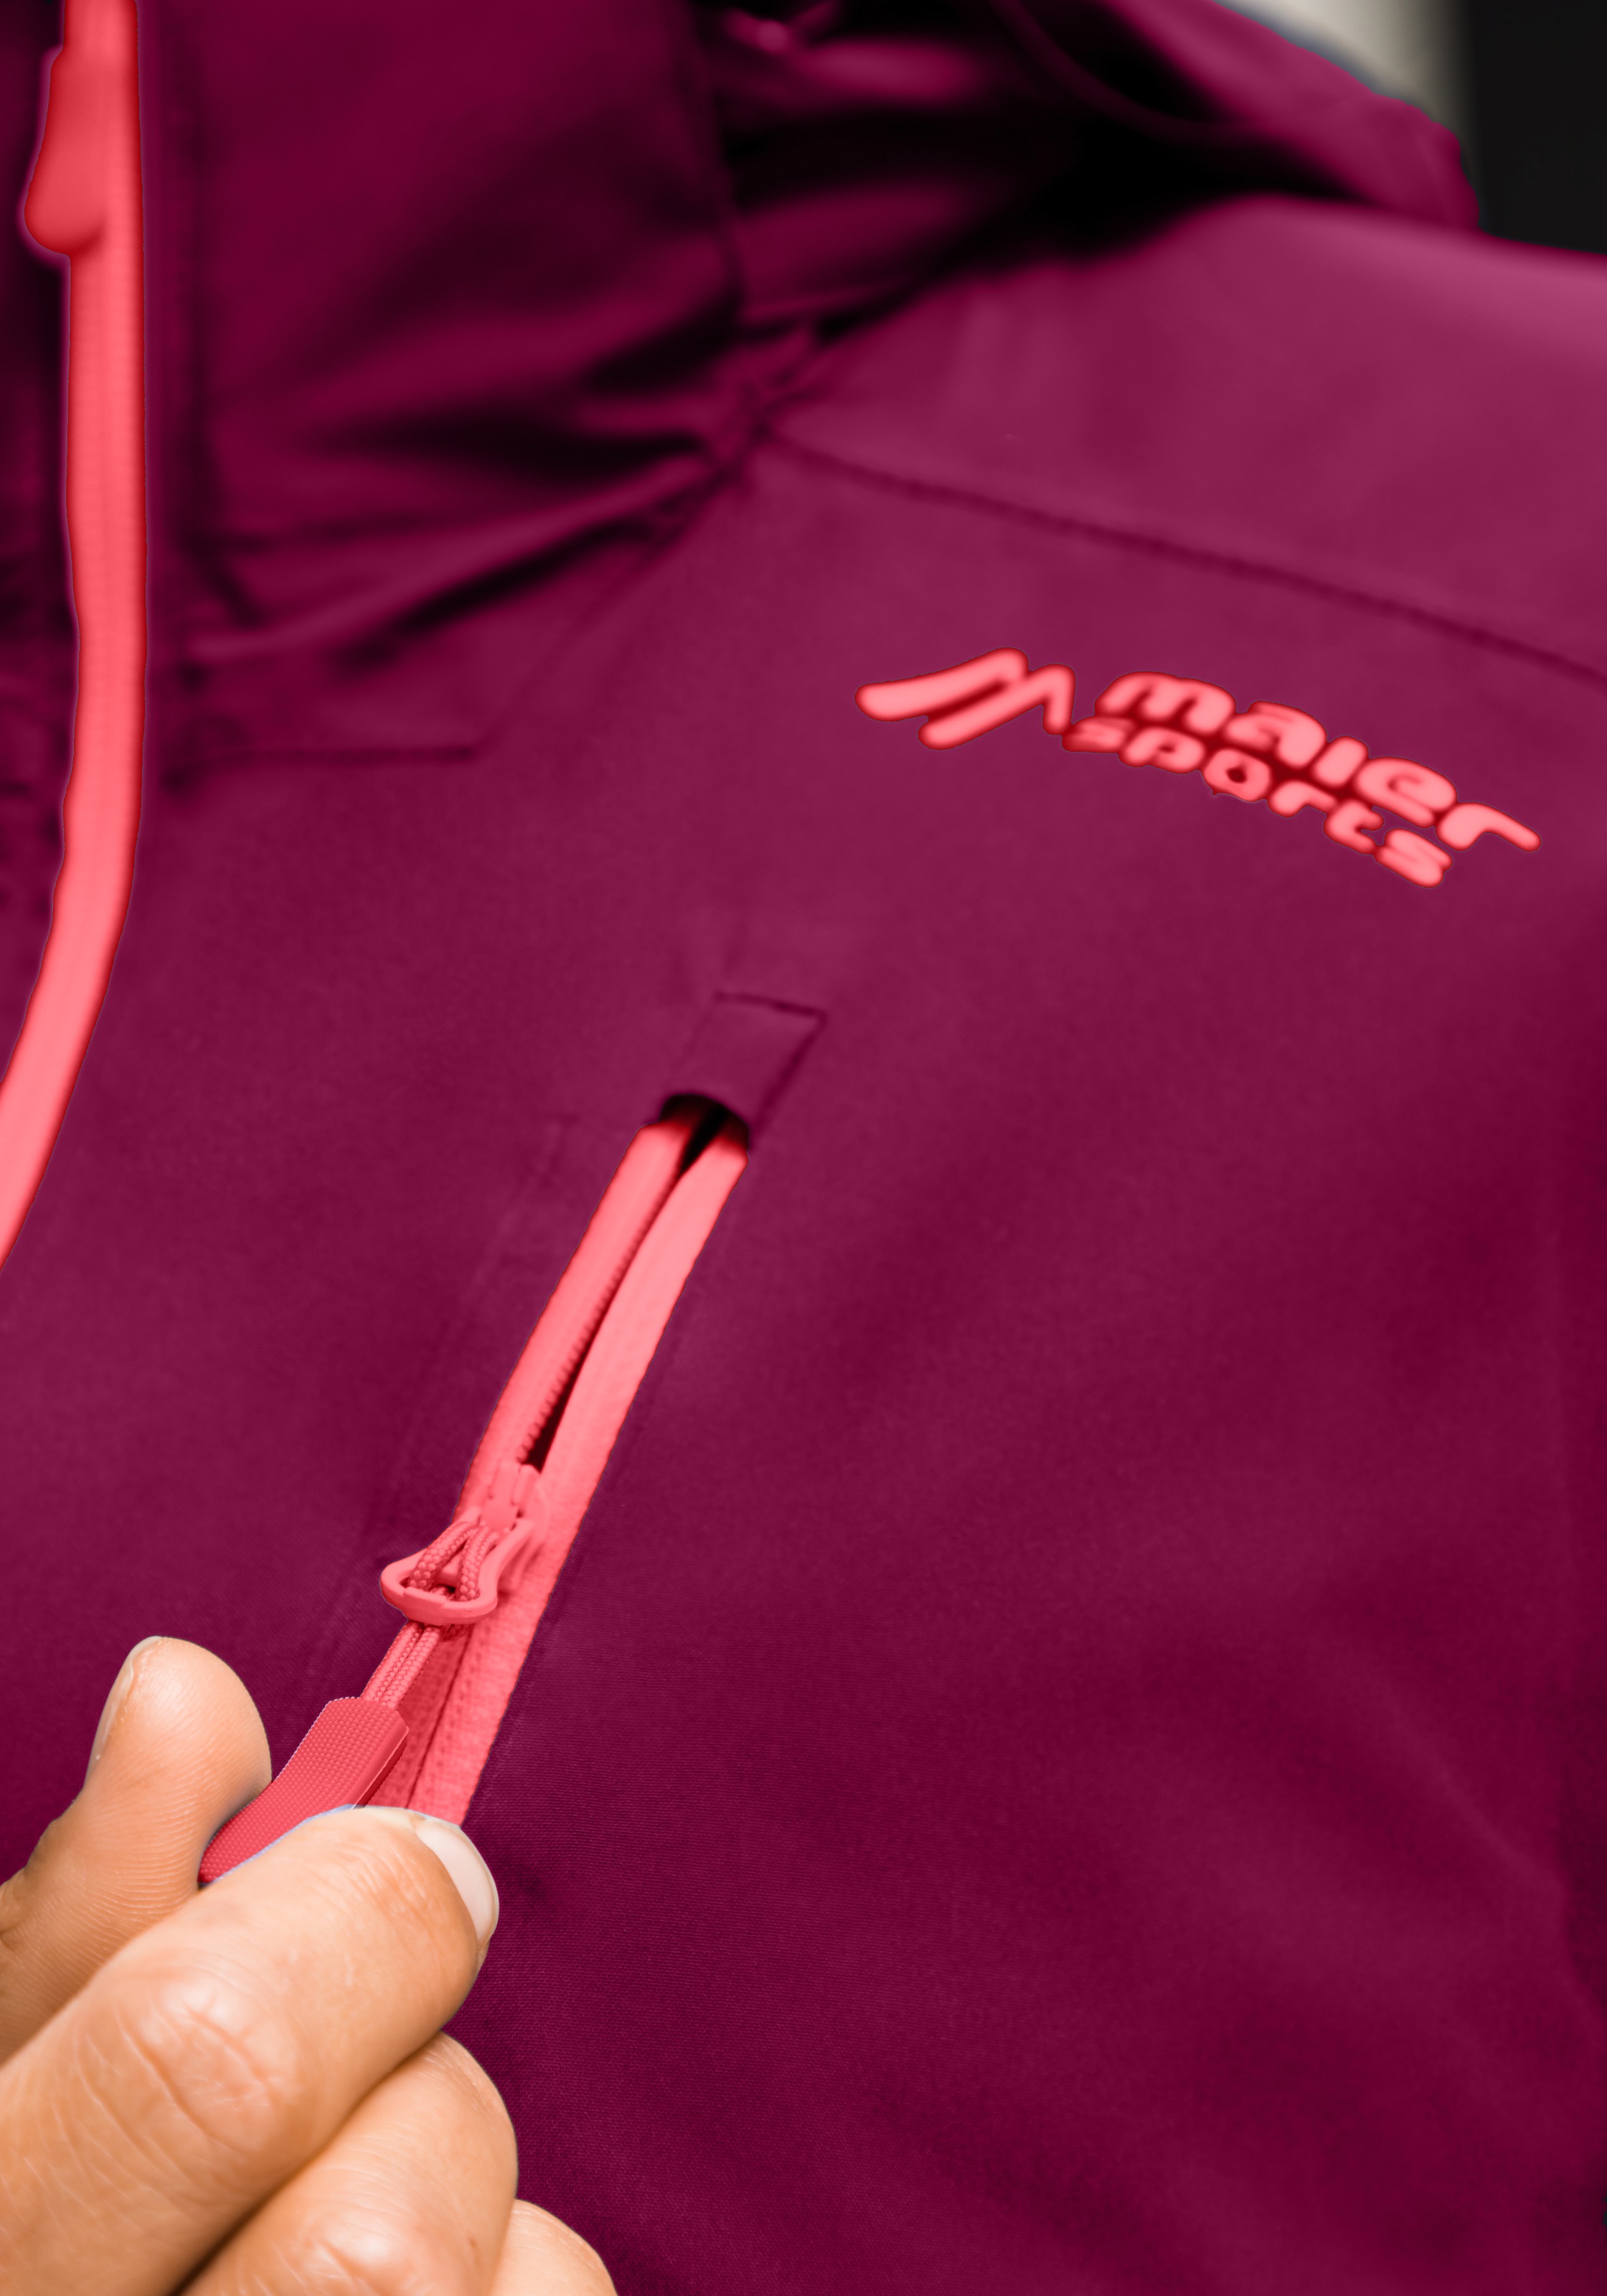 Maier Sports 3-in-1-Funktionsjacke »Ribut W«, Wander-Jacke für Damen, wasserdicht und atmungsaktiv